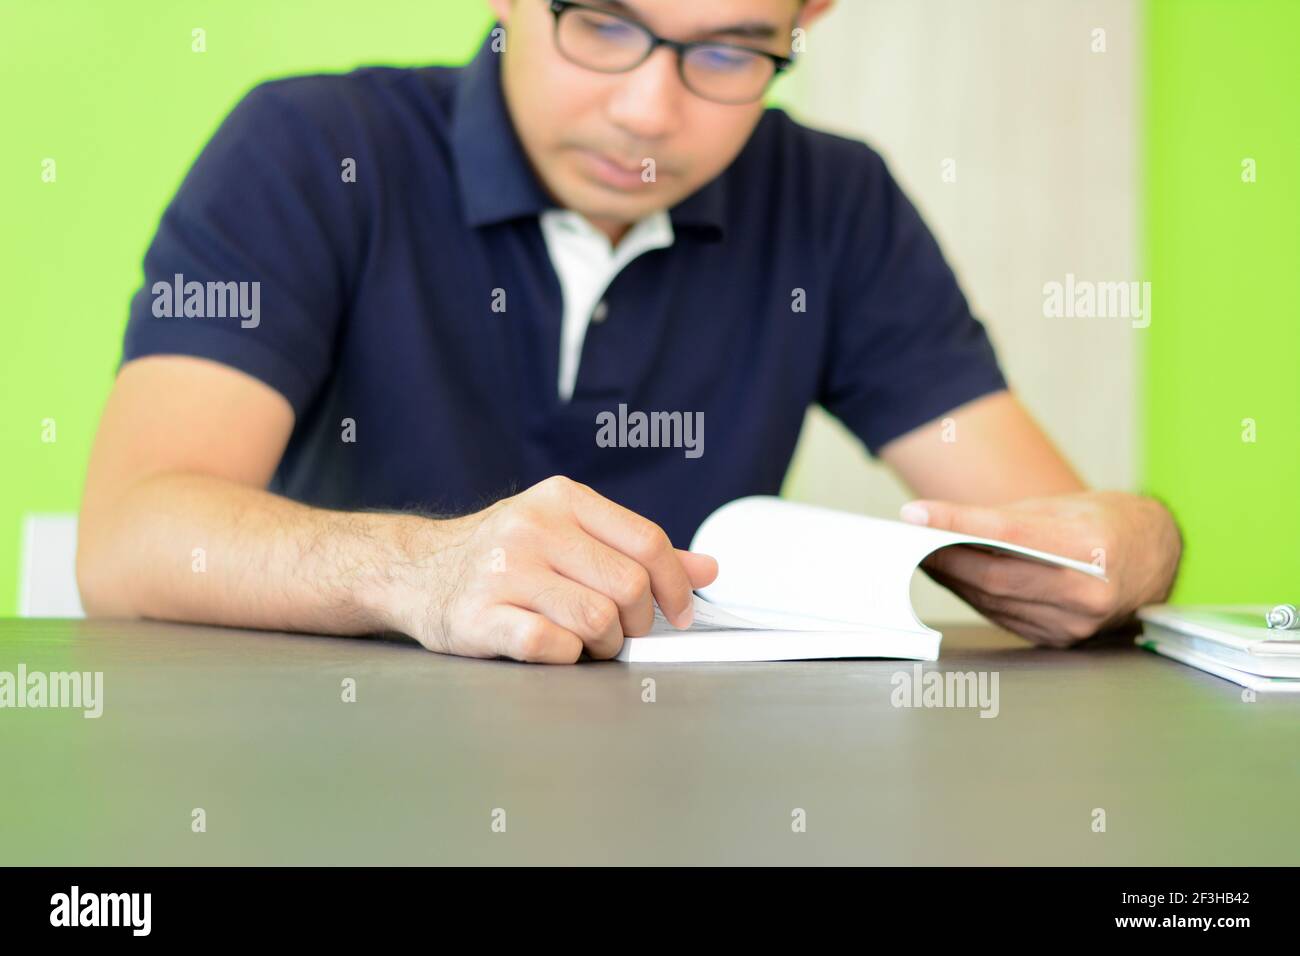 Ein Mann liest Buch auf dem Tisch - Studieren & Prüfungskonzept Stockfoto